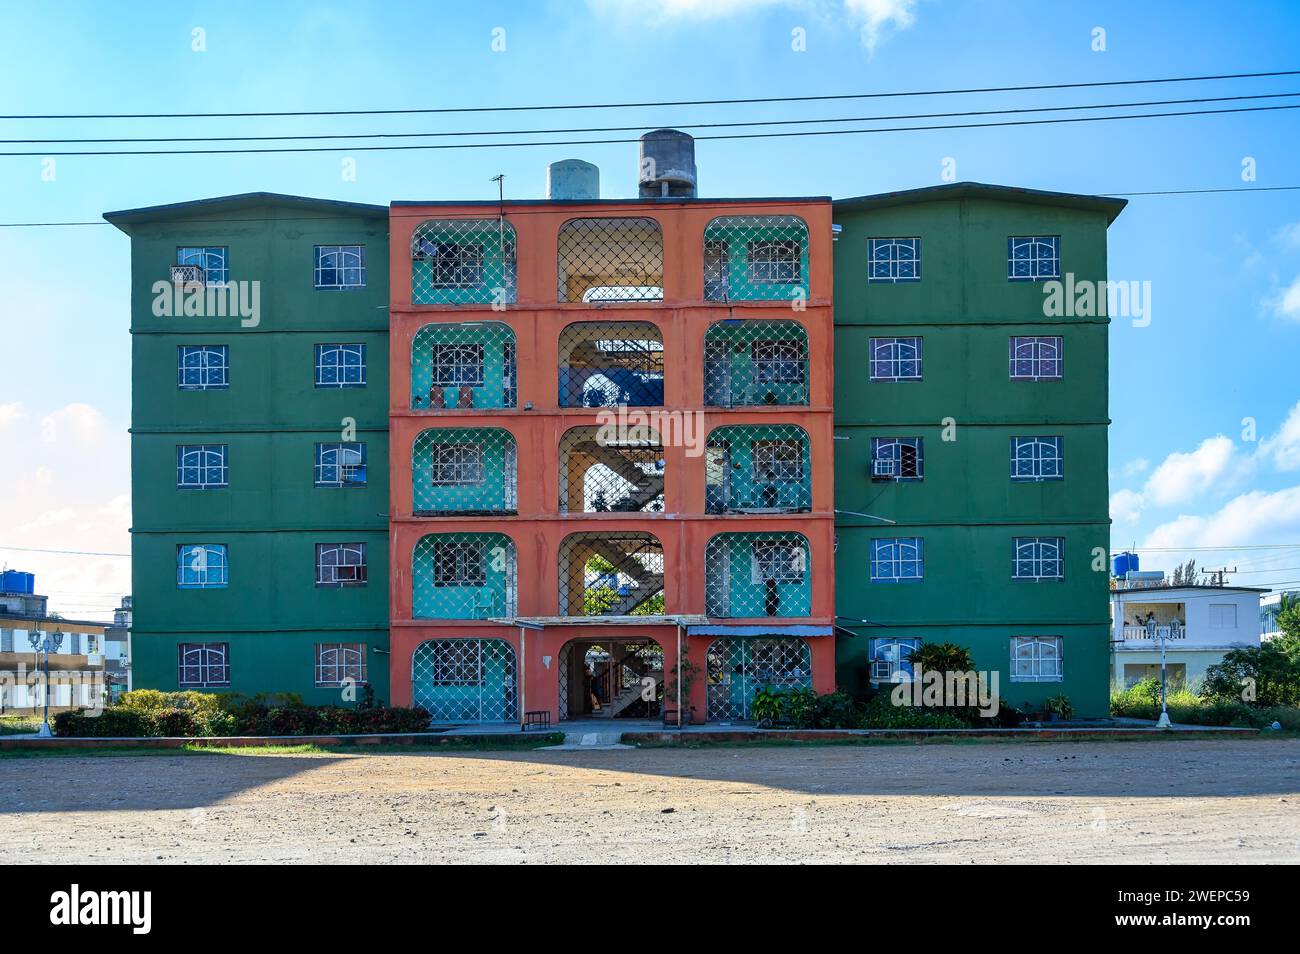 Facade of an apartment building in the Jose Marti district, Santa Clara, Cuba Stock Photo